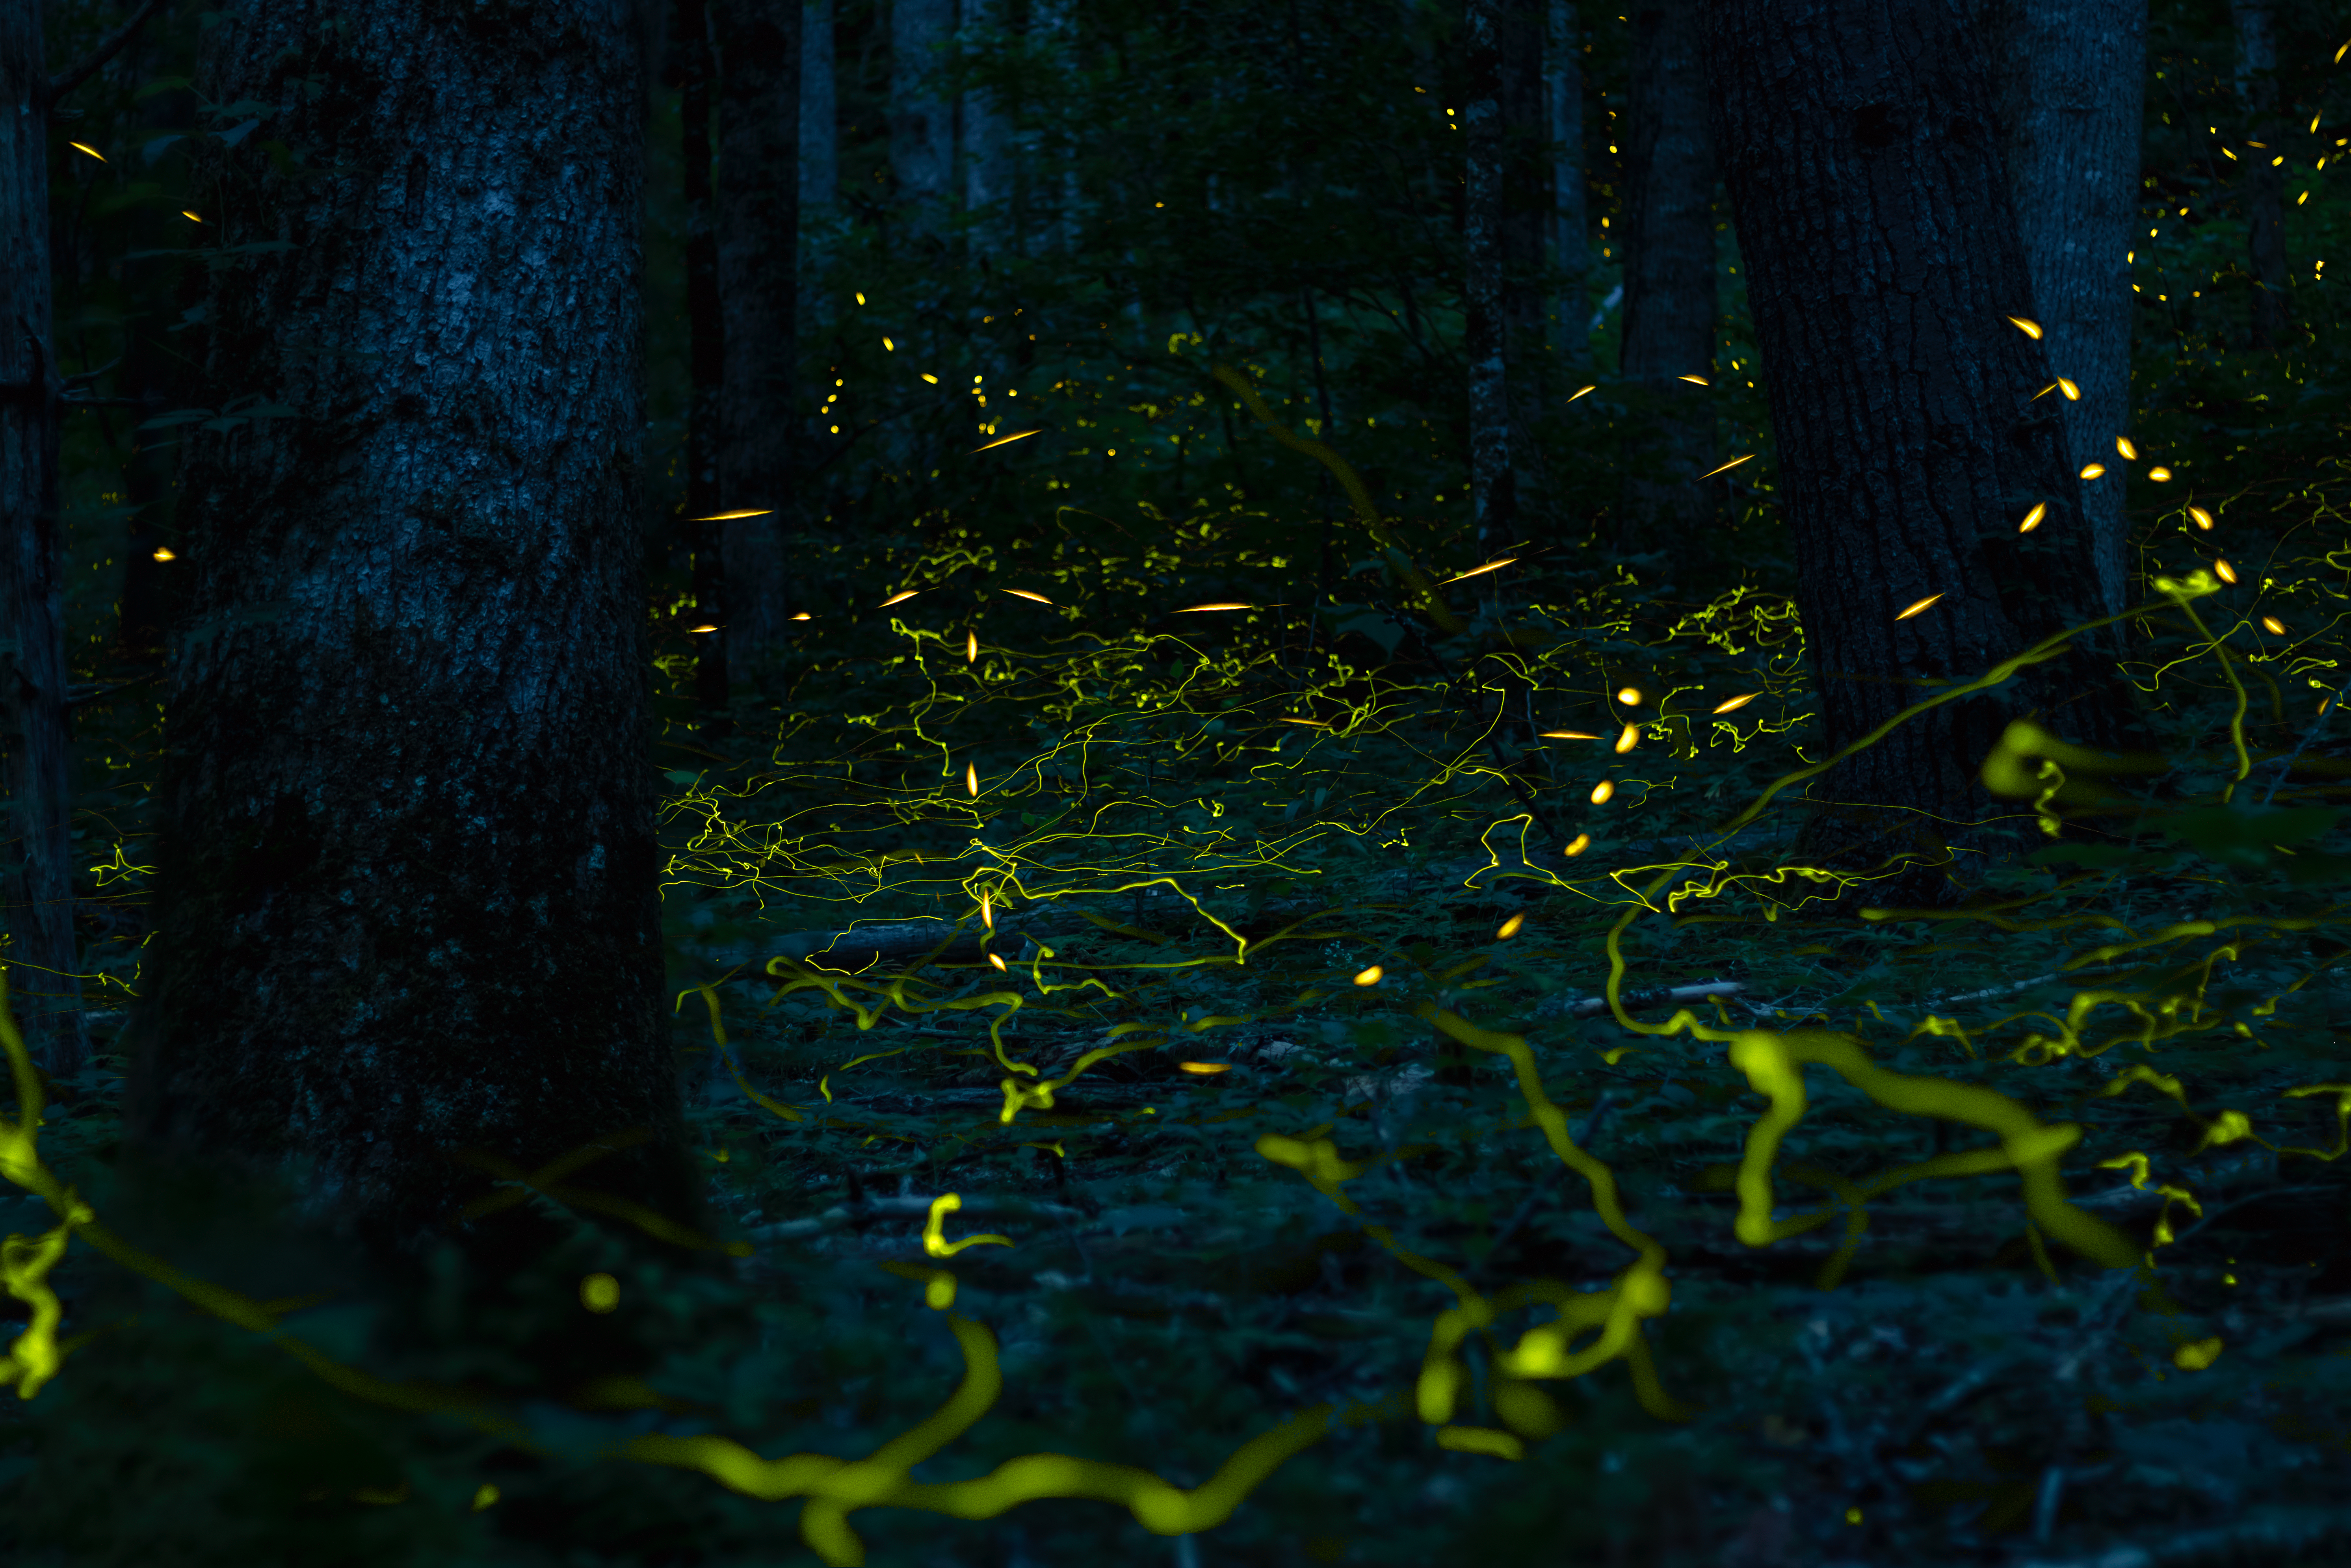 Fireflies Nature Forest Landscape 5967x3980